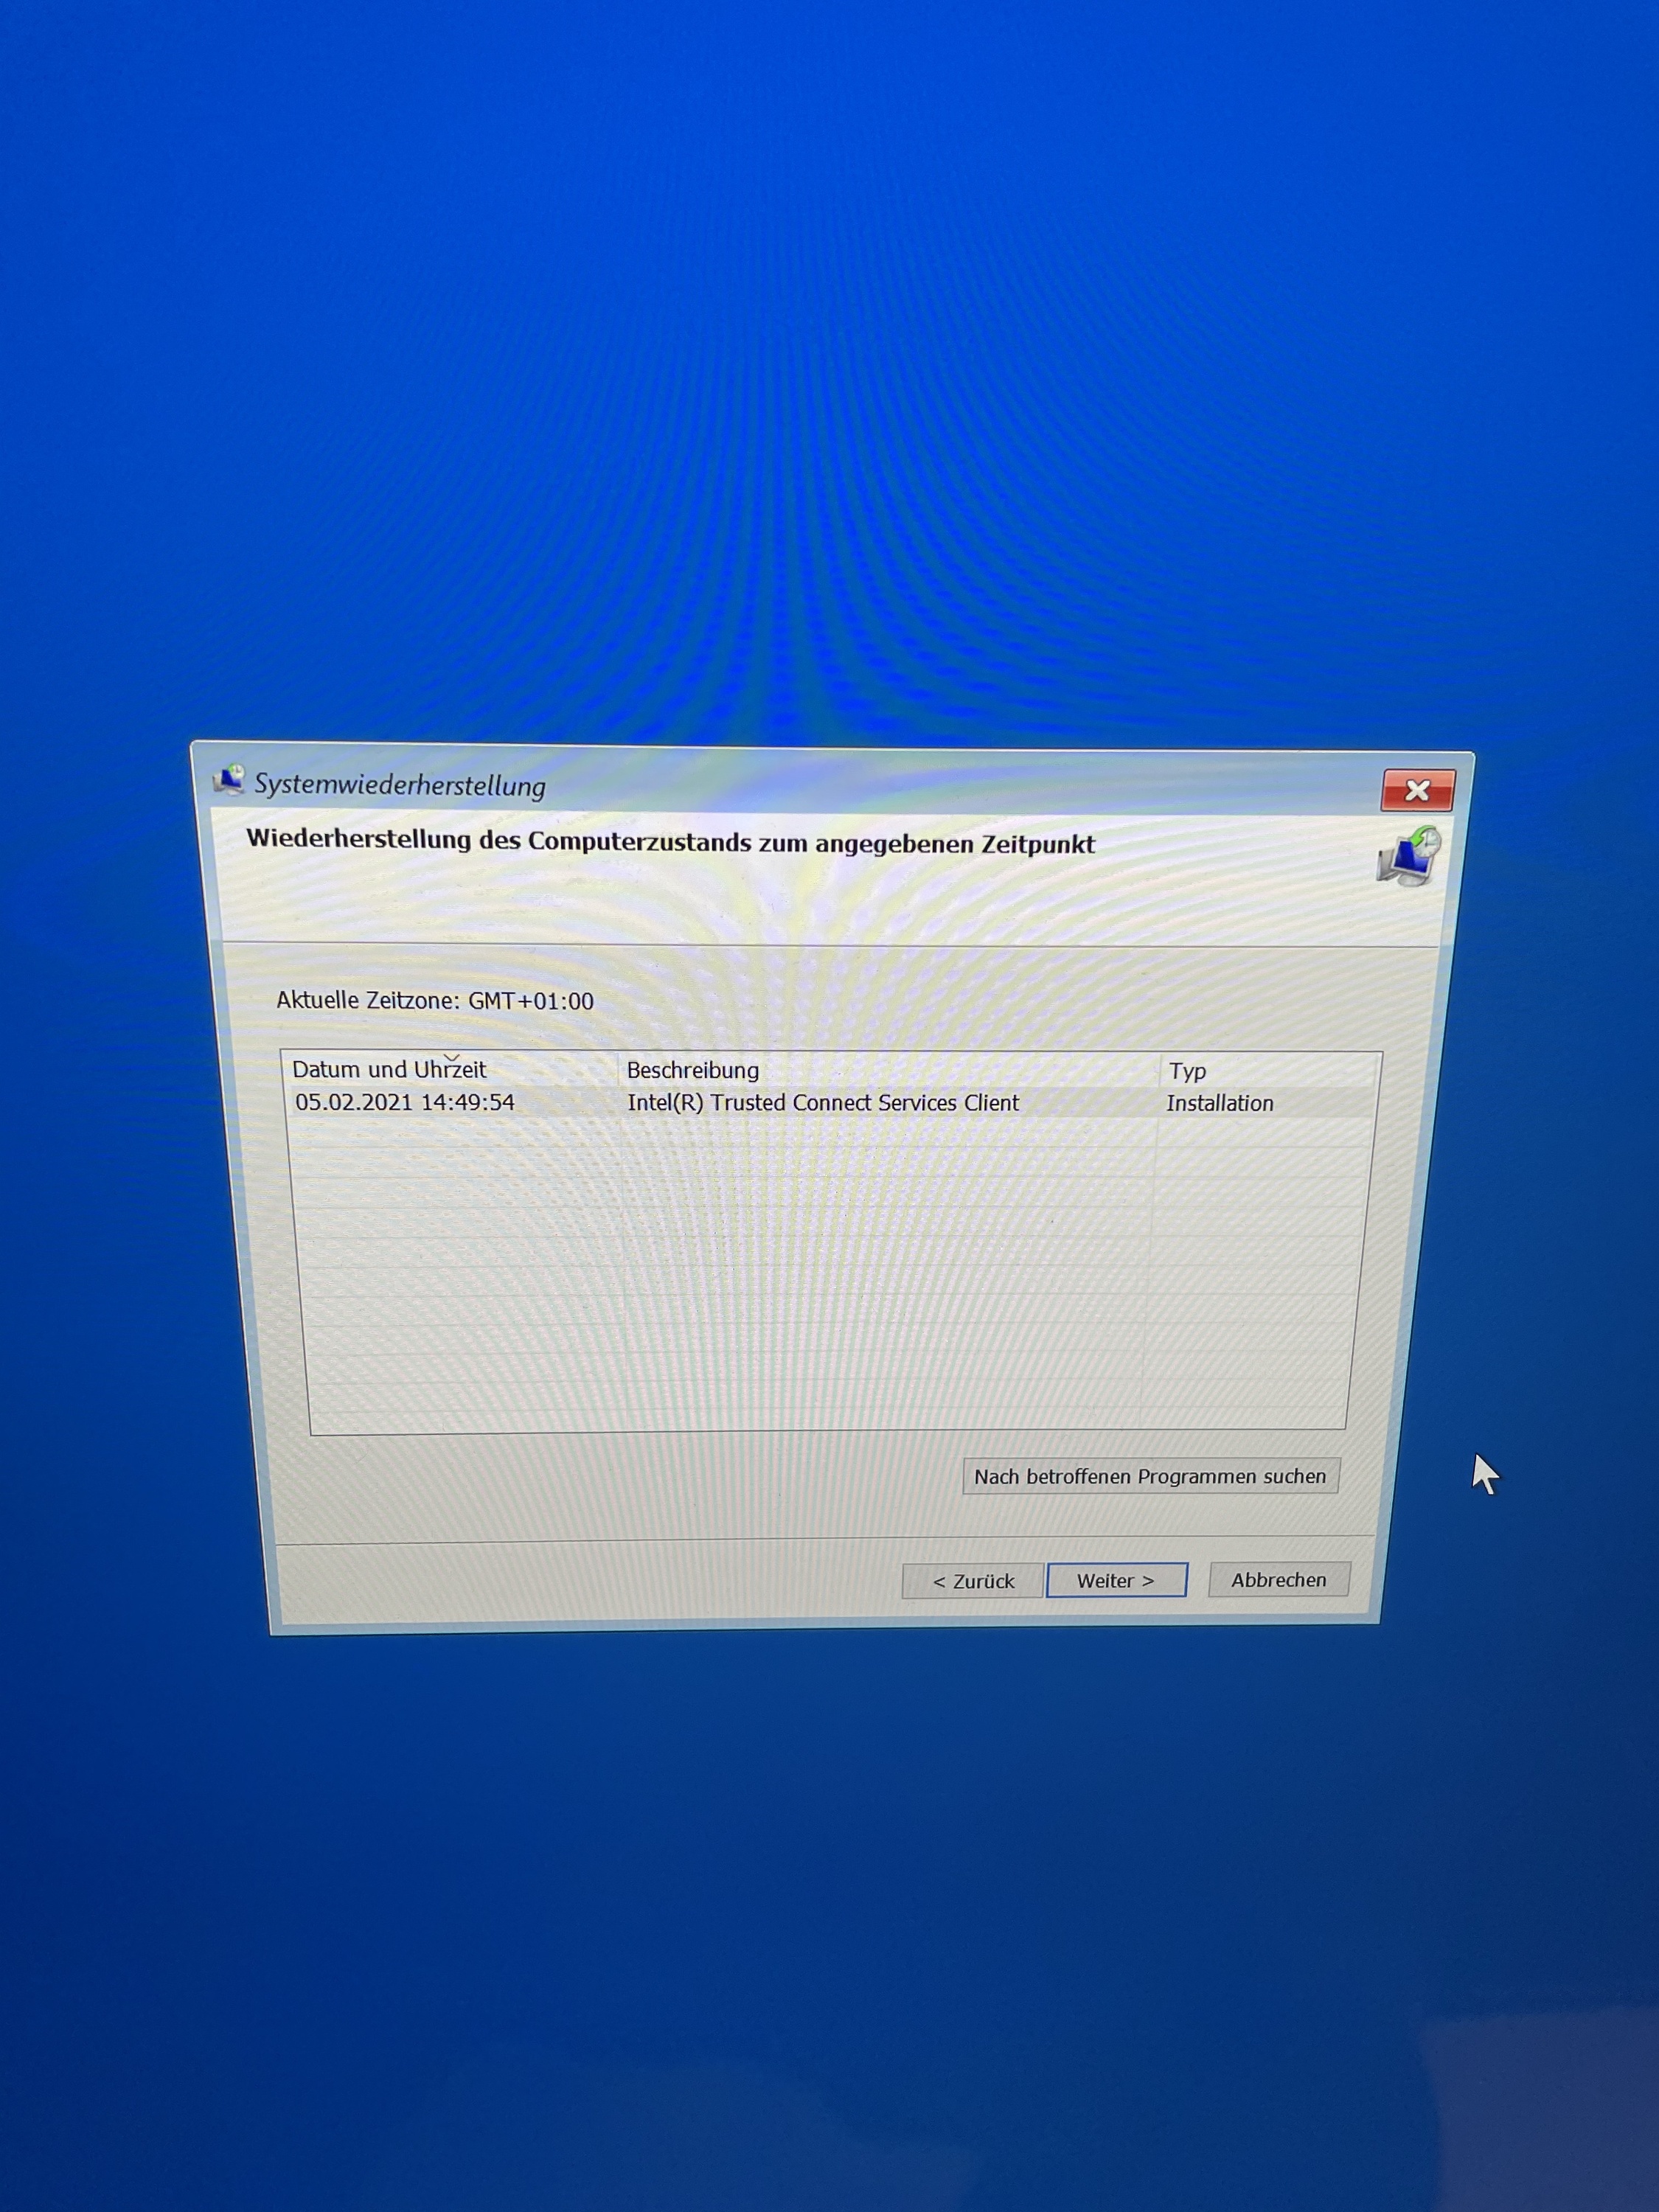 Windows 10 über Bootcamp Treiberfehler